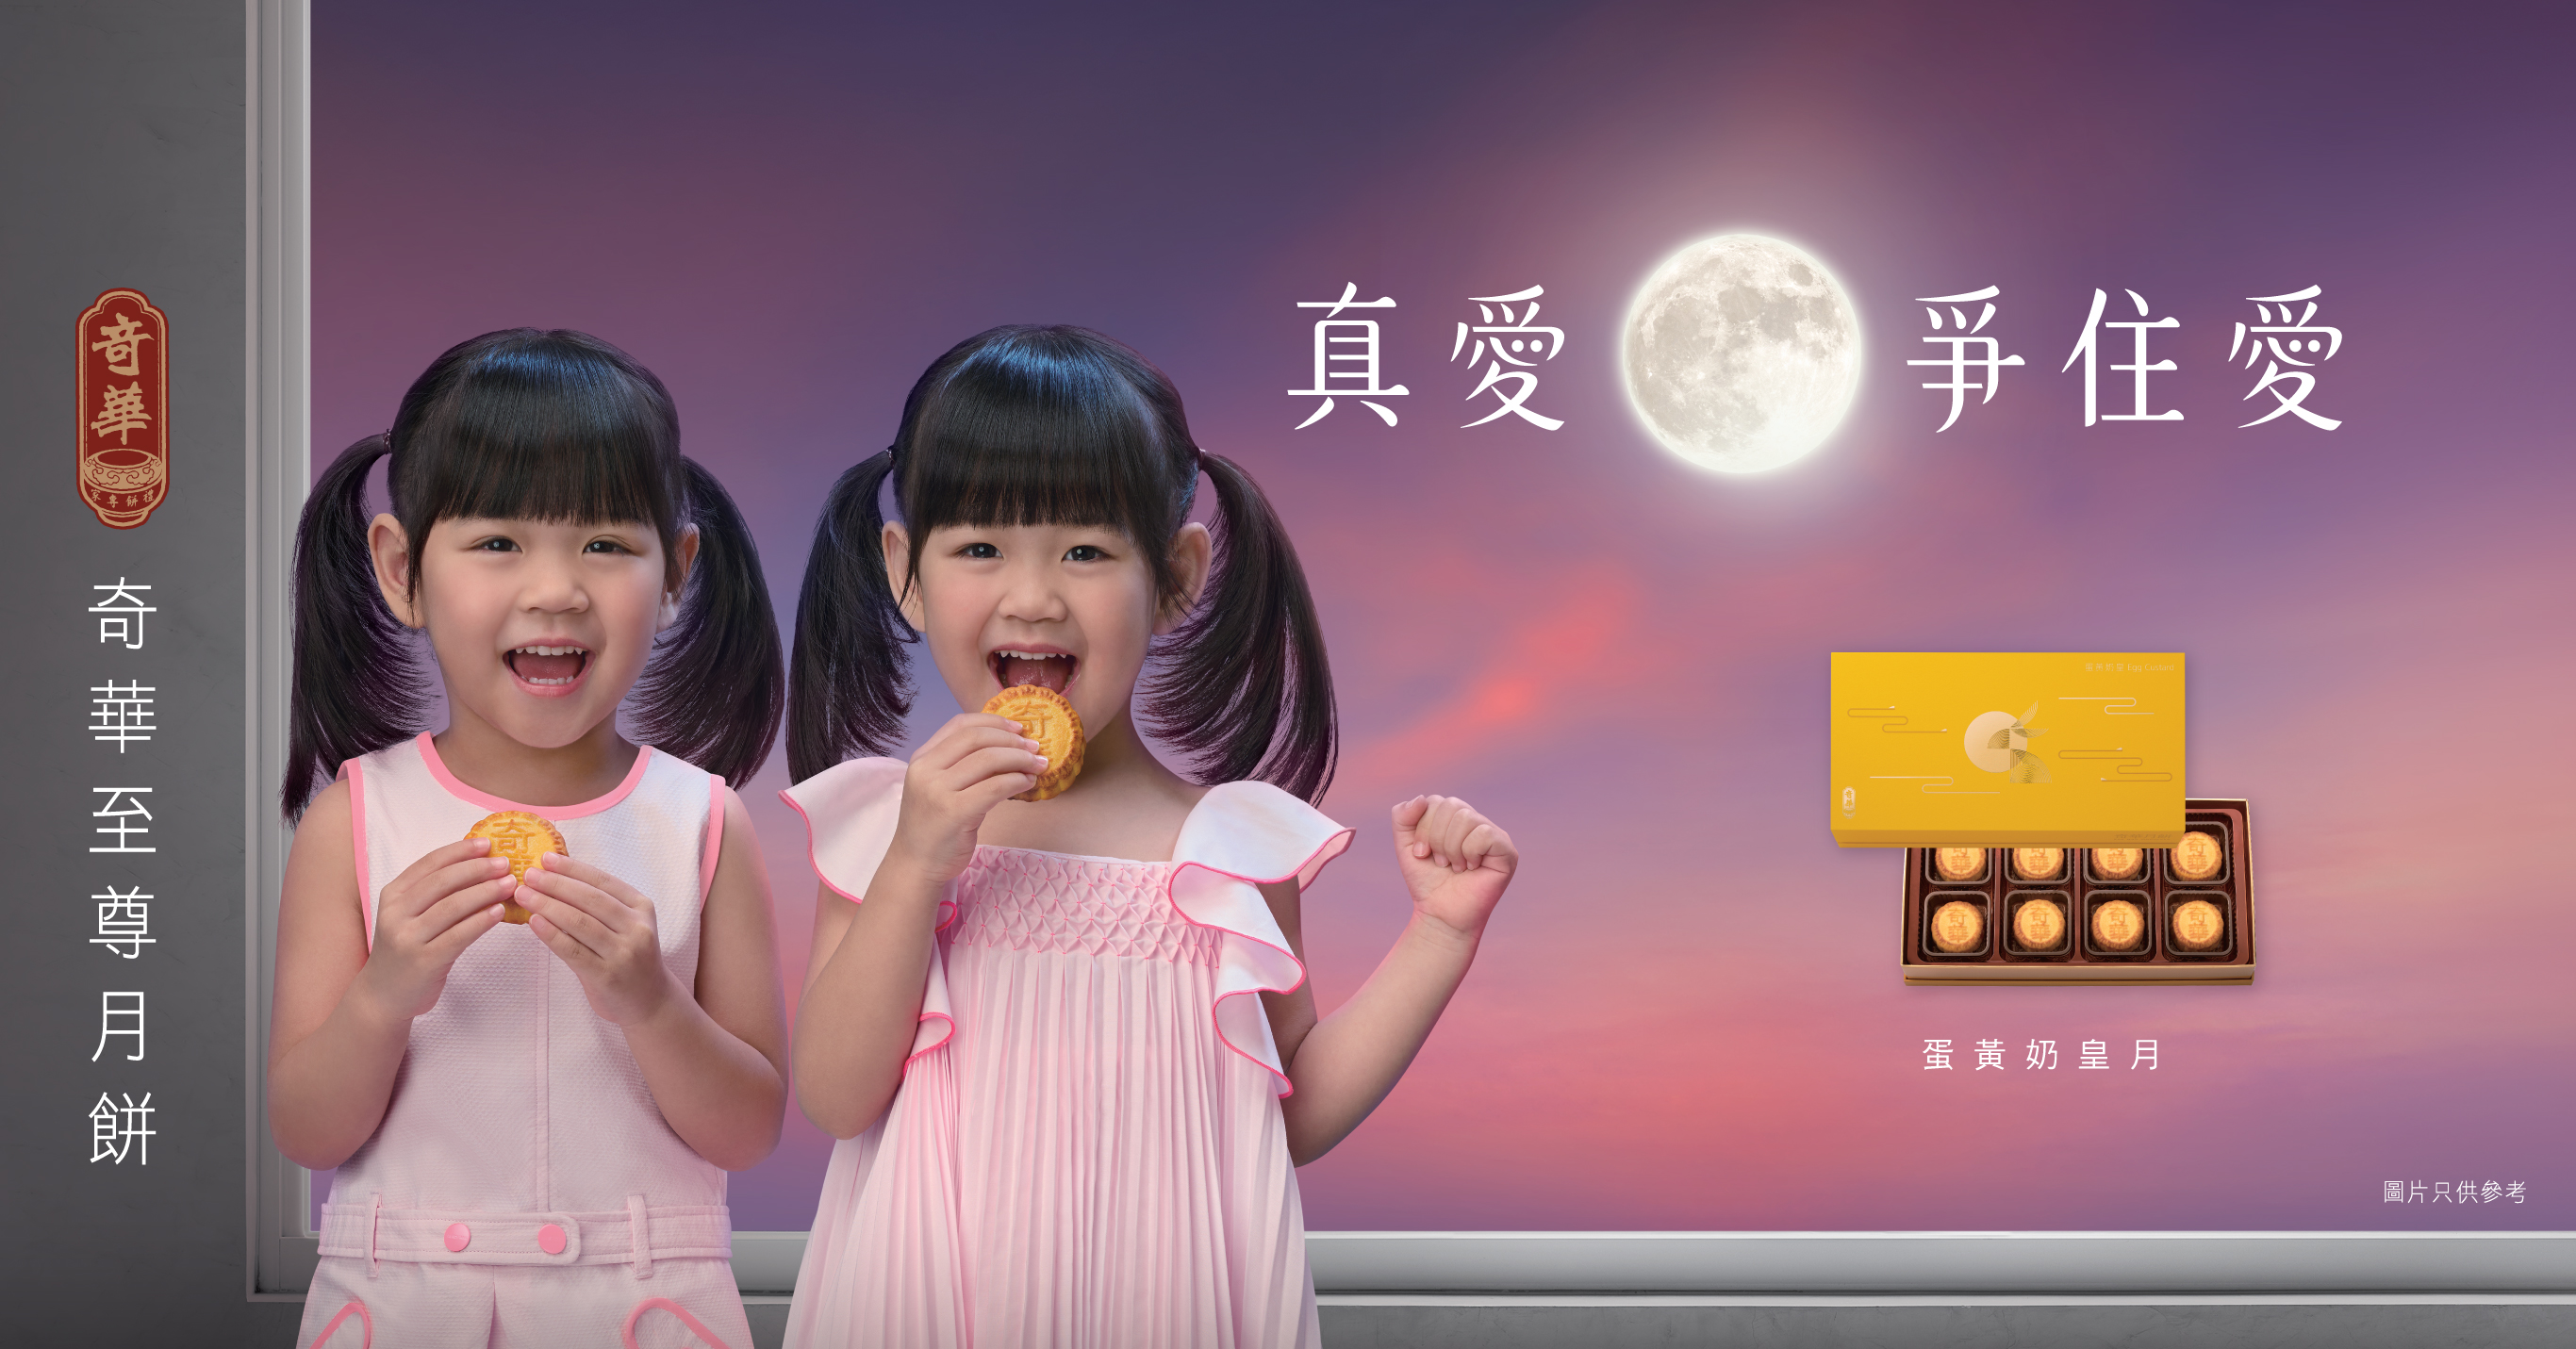 全新奇華餅家電視廣告現已推出